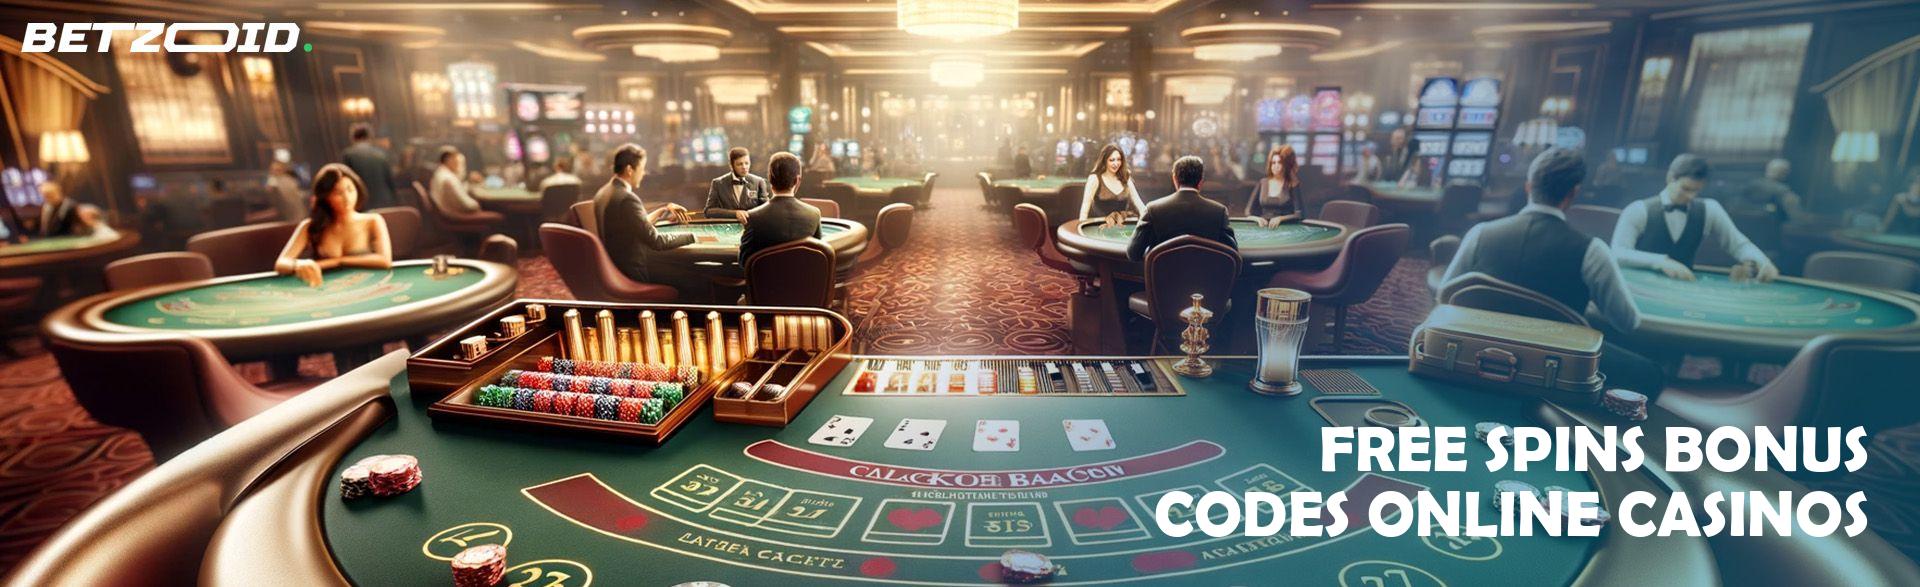 Free Spins Bonus Codes Online Casinos.